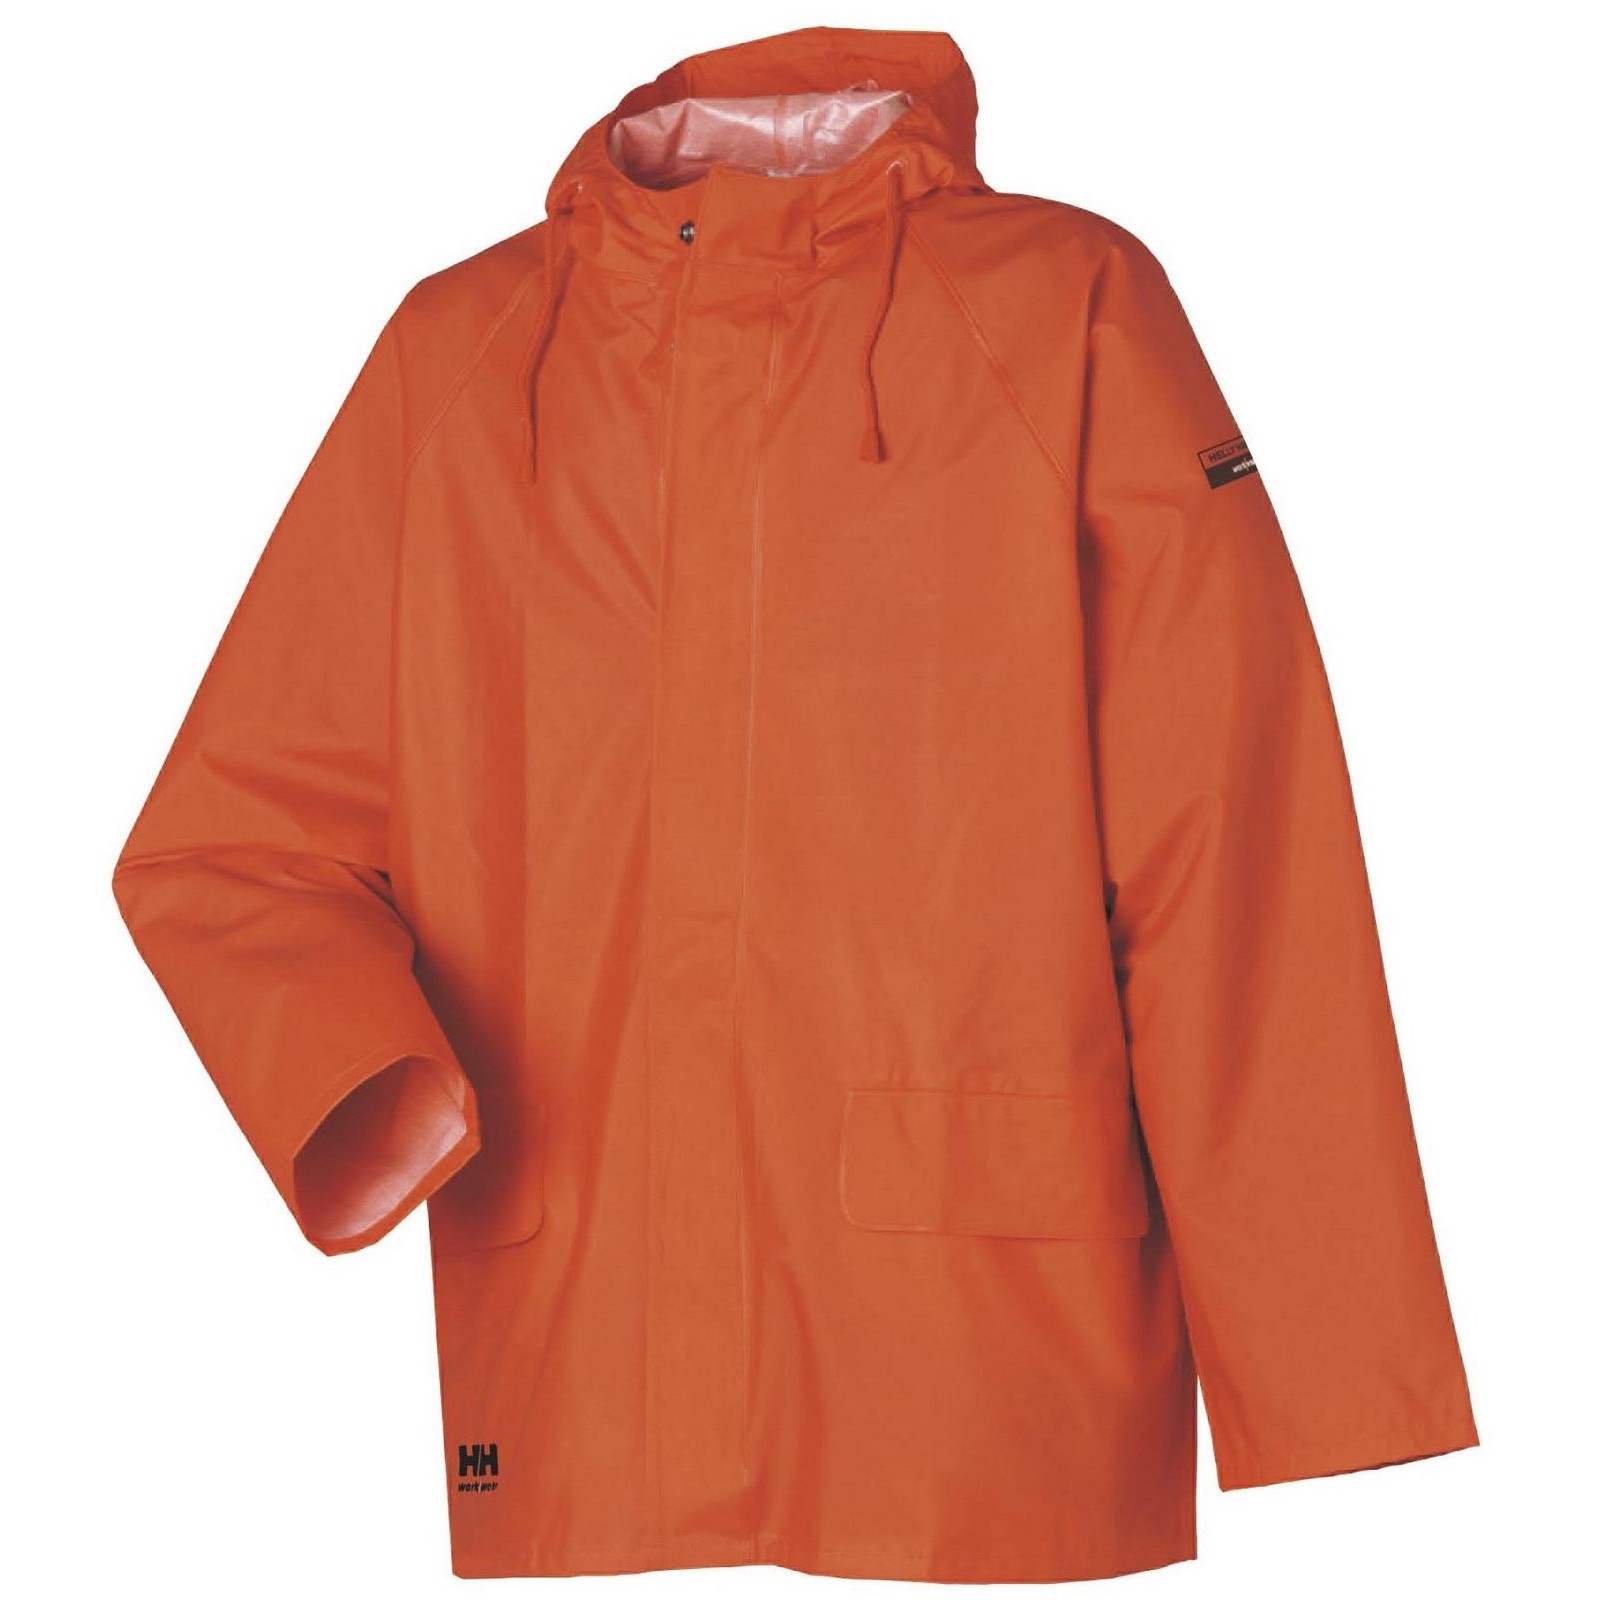 Куртка водонепроницаемая оранжевая Helly Hansen Mandal размер L, Osculati 24.504.23